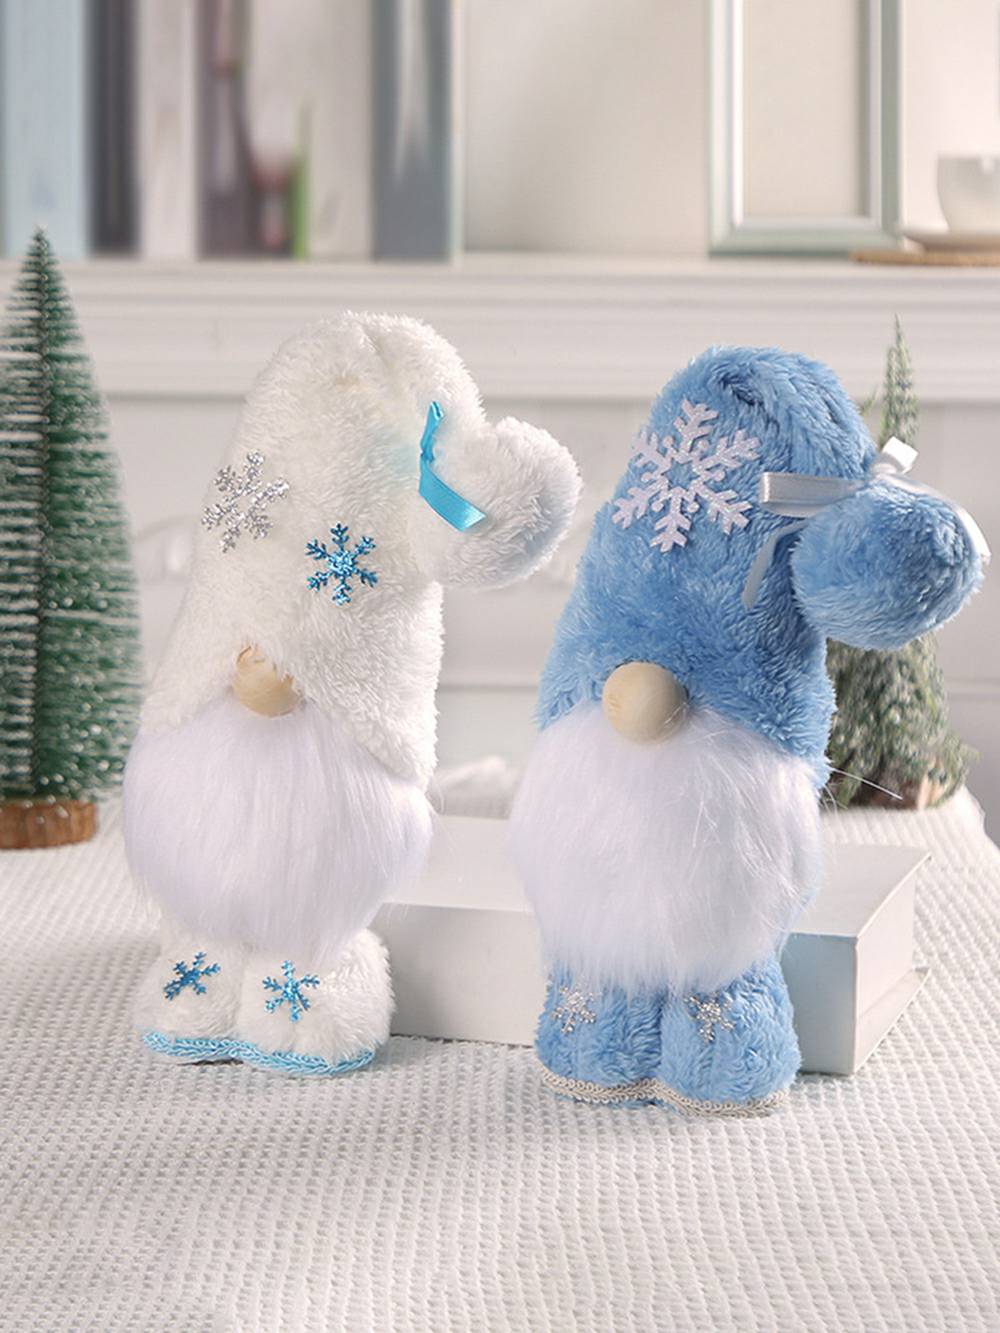 Weihnachtsplüsch-Puppe Rudolph in Blau und Weiß